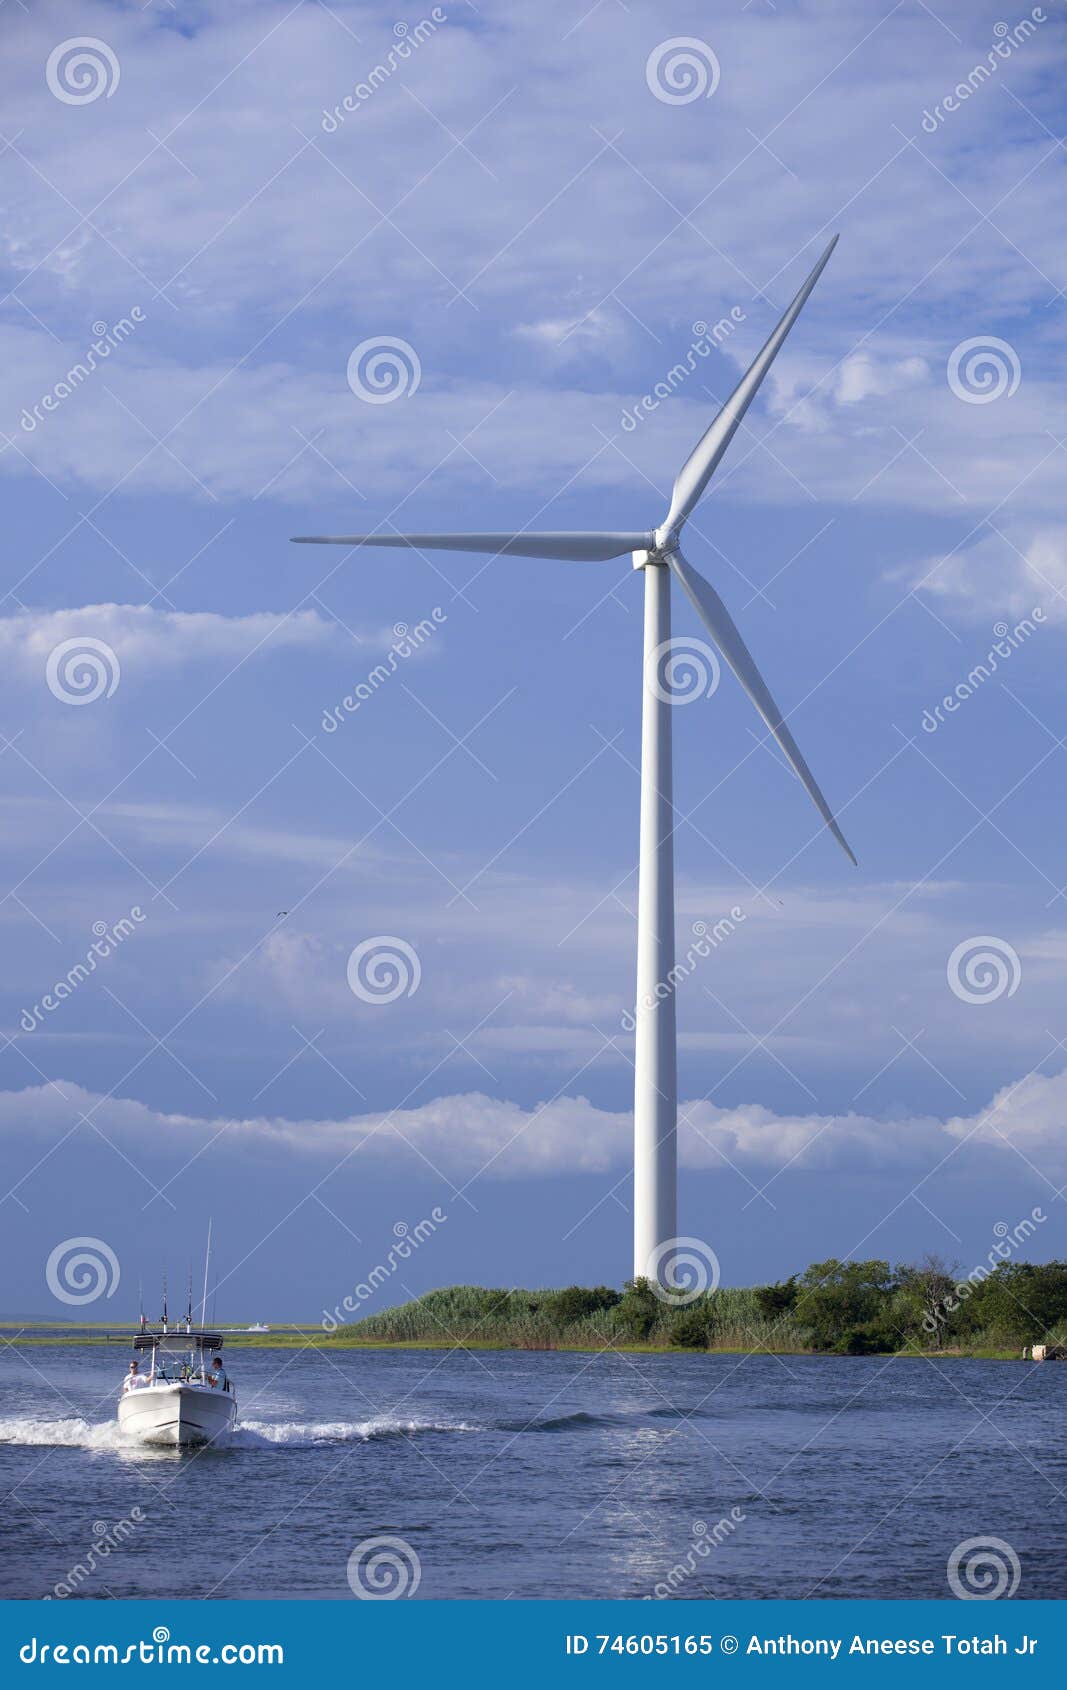 El aerogenerador: ¡el molino de viento moderno!